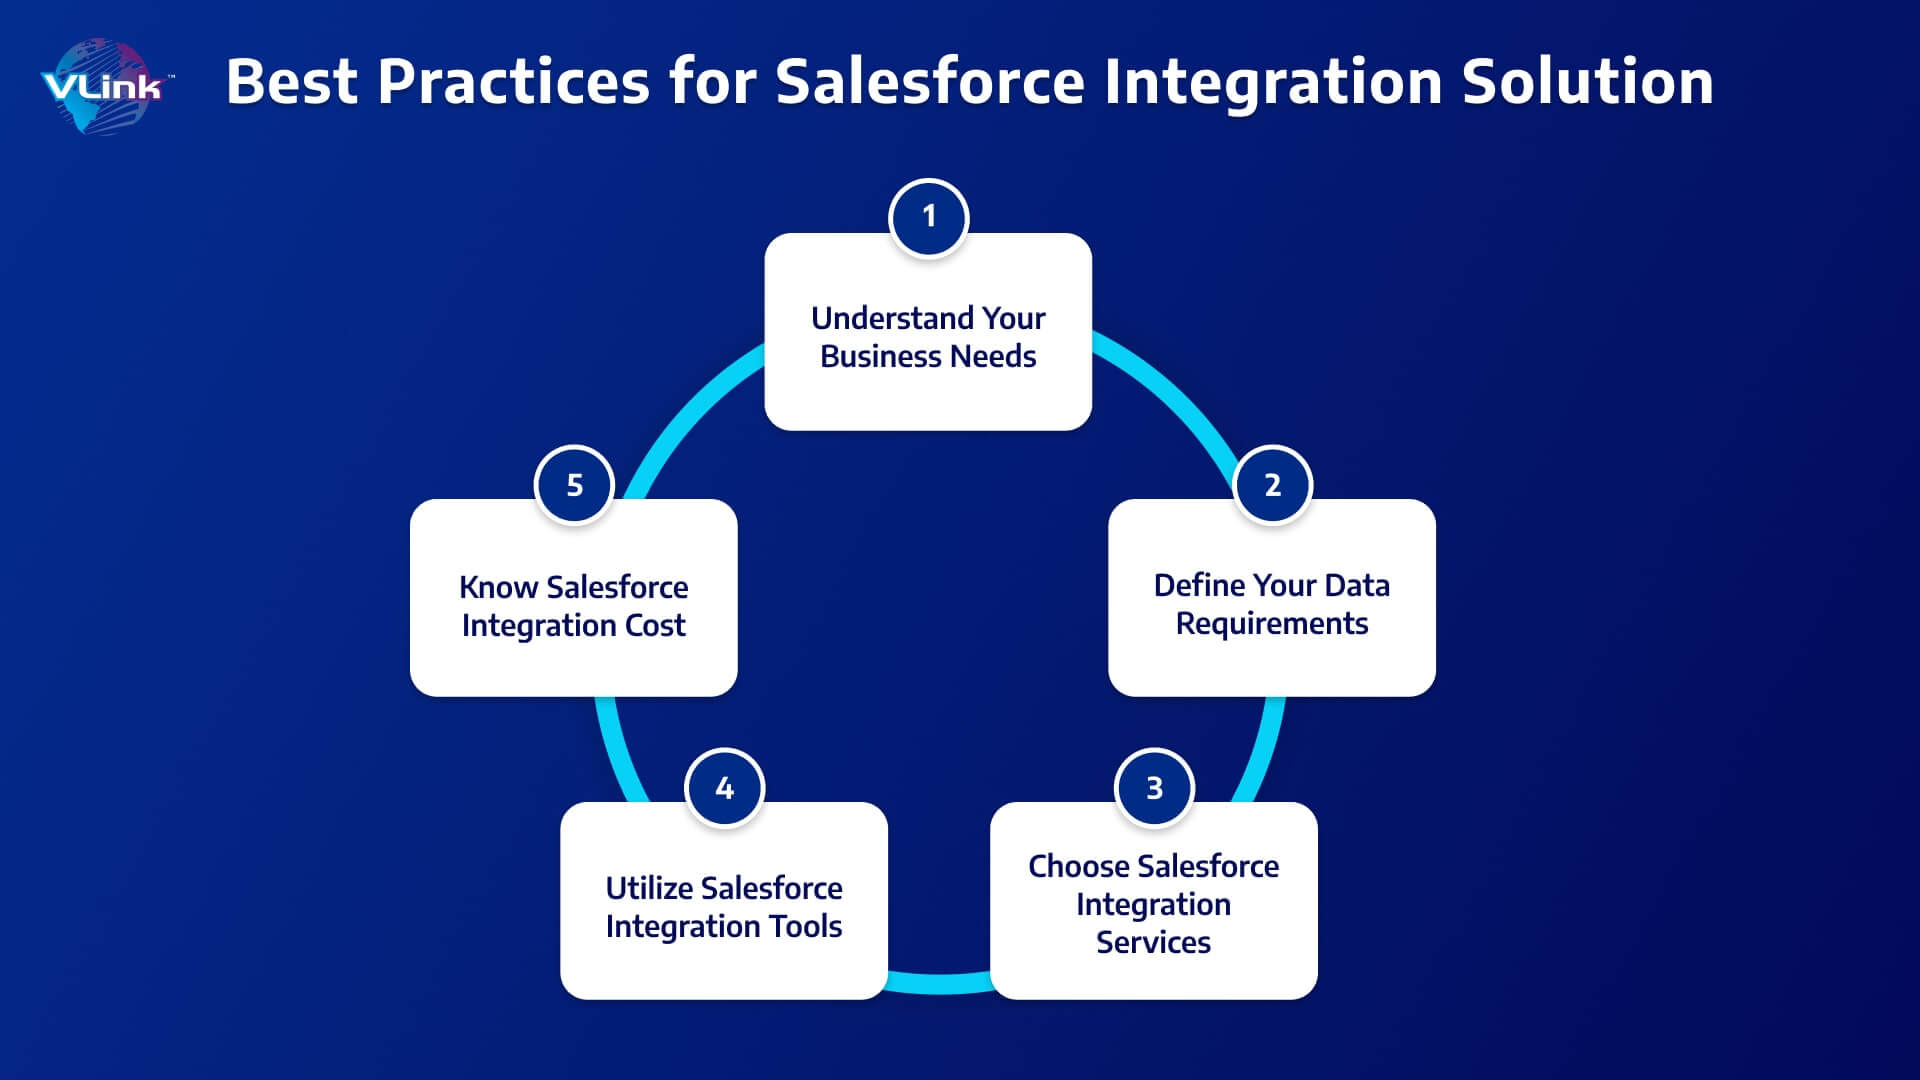 Best Practice for Salesforce Integration Solution